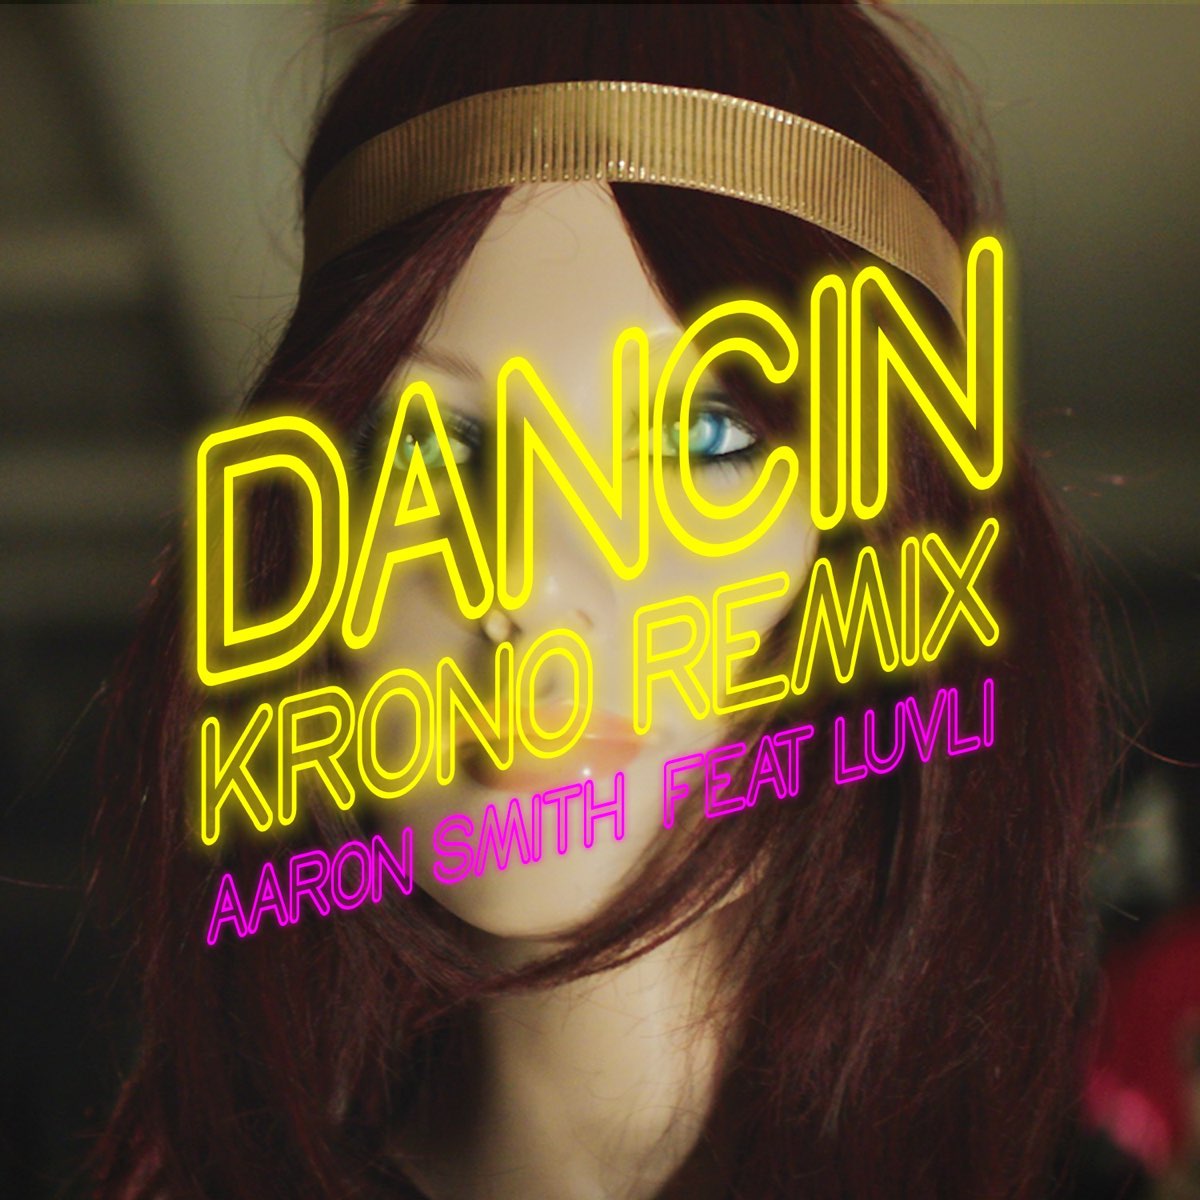 Песня танцы спид ап. Aaron Smith, Luvli Dancin. Aaron Smith Dancin Luvli Krono Remix. Dancin Krono Remix.